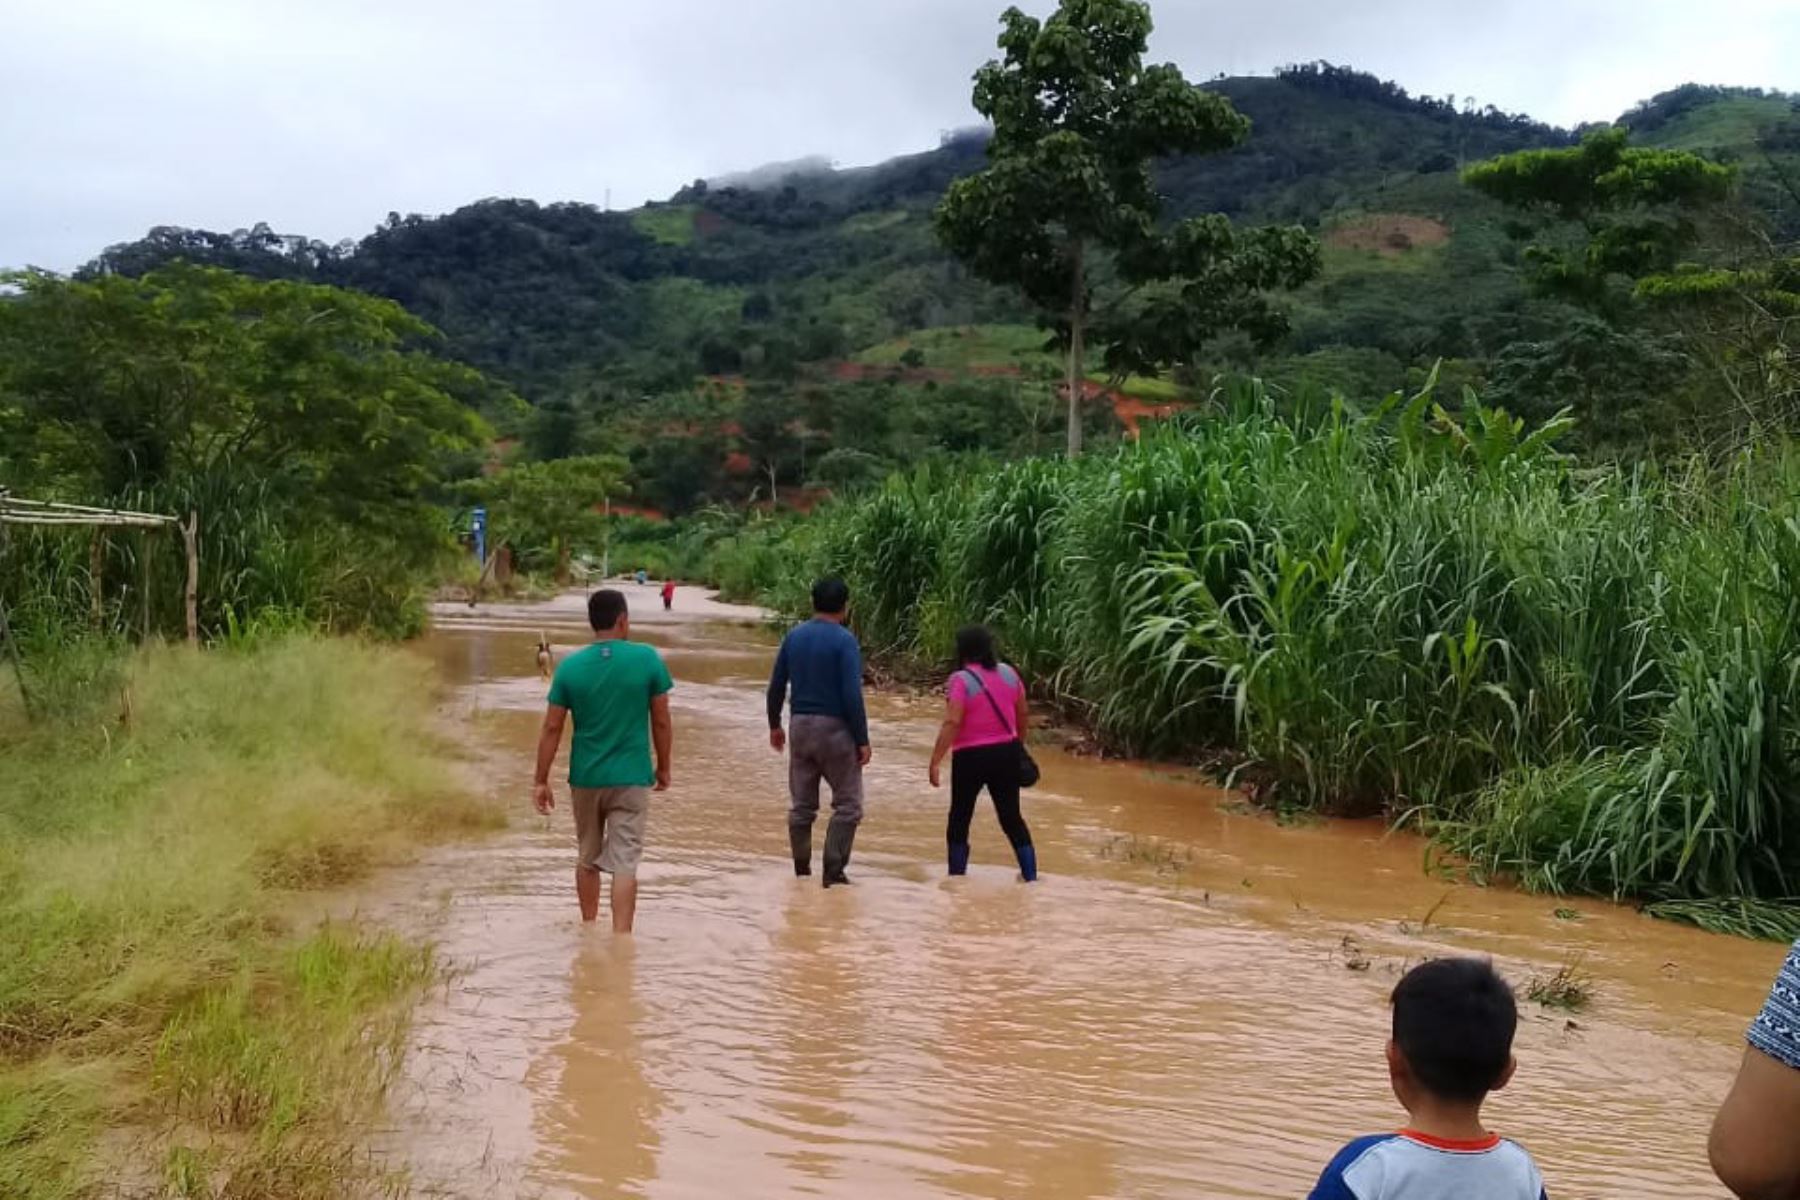 Lluvias torrenciales inundan viviendas y afectan cultivos en el distrito de Pangoa, provincia de Satipo, en la selva de Junín. ANDINA/Difusión